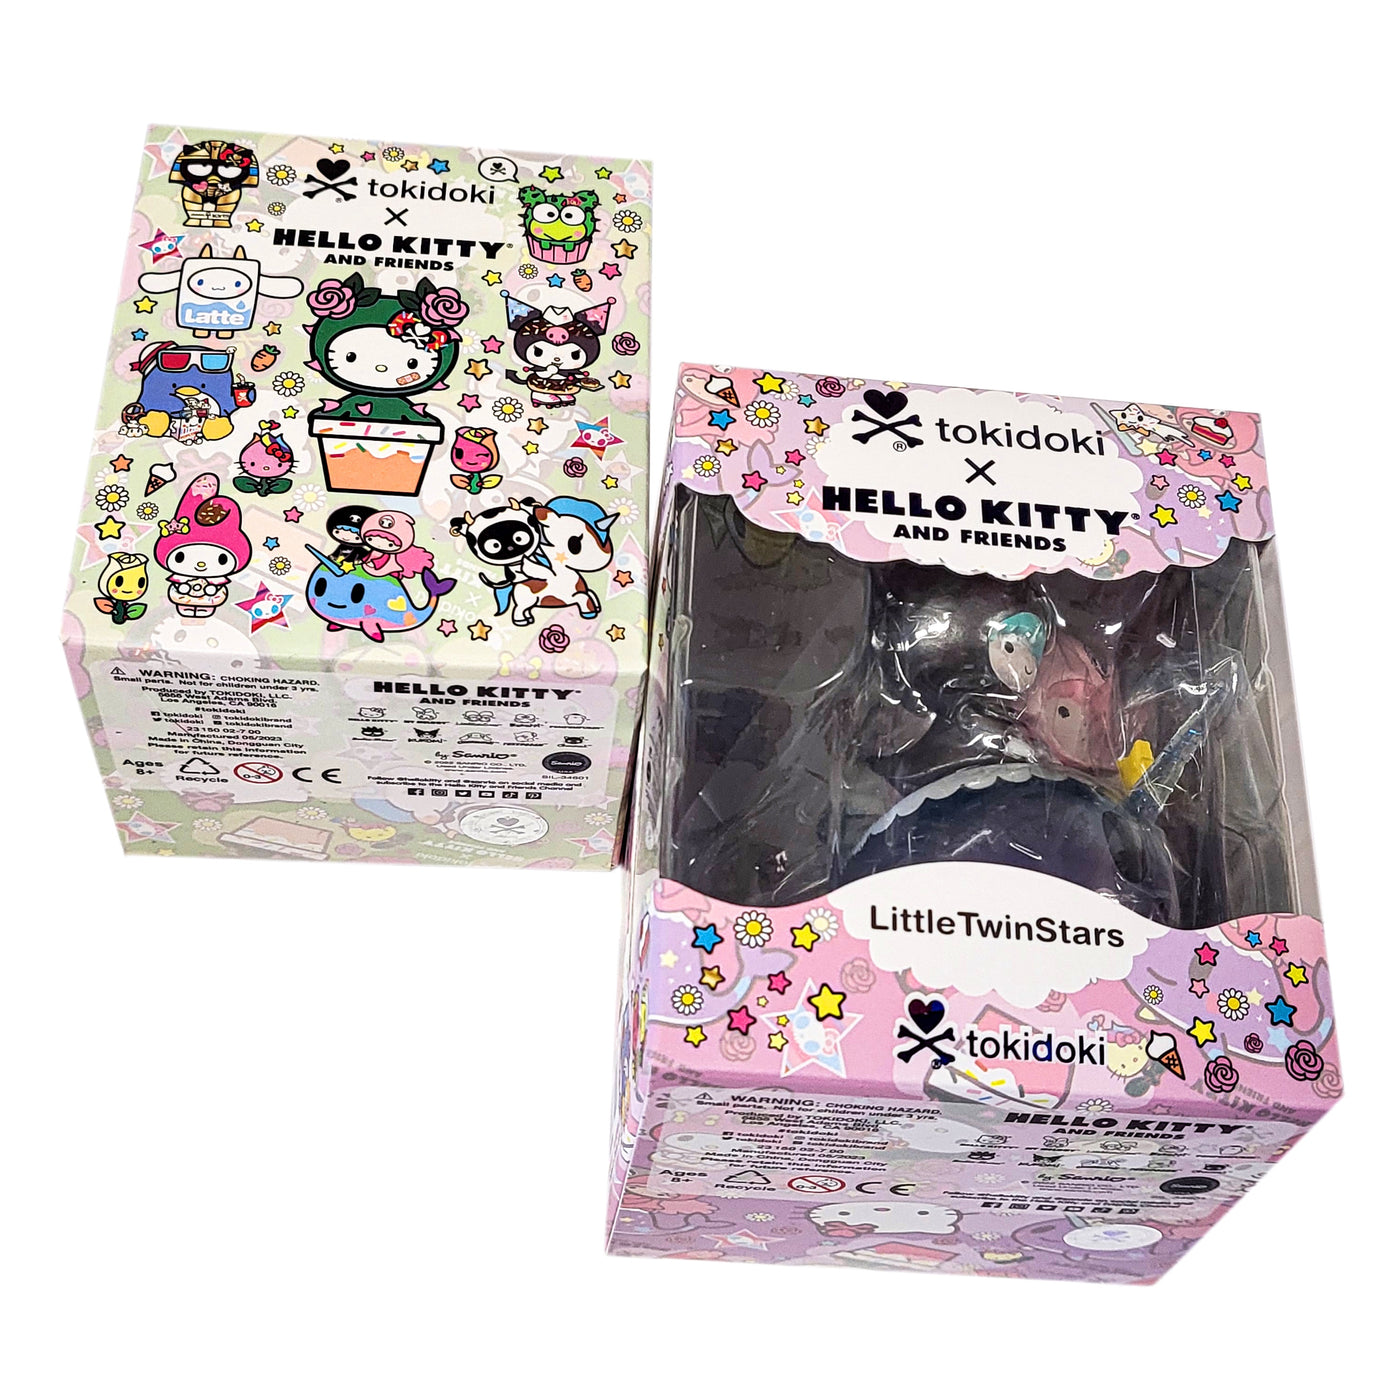 tokidoki x Hello Kitty & Friends 2 Pack